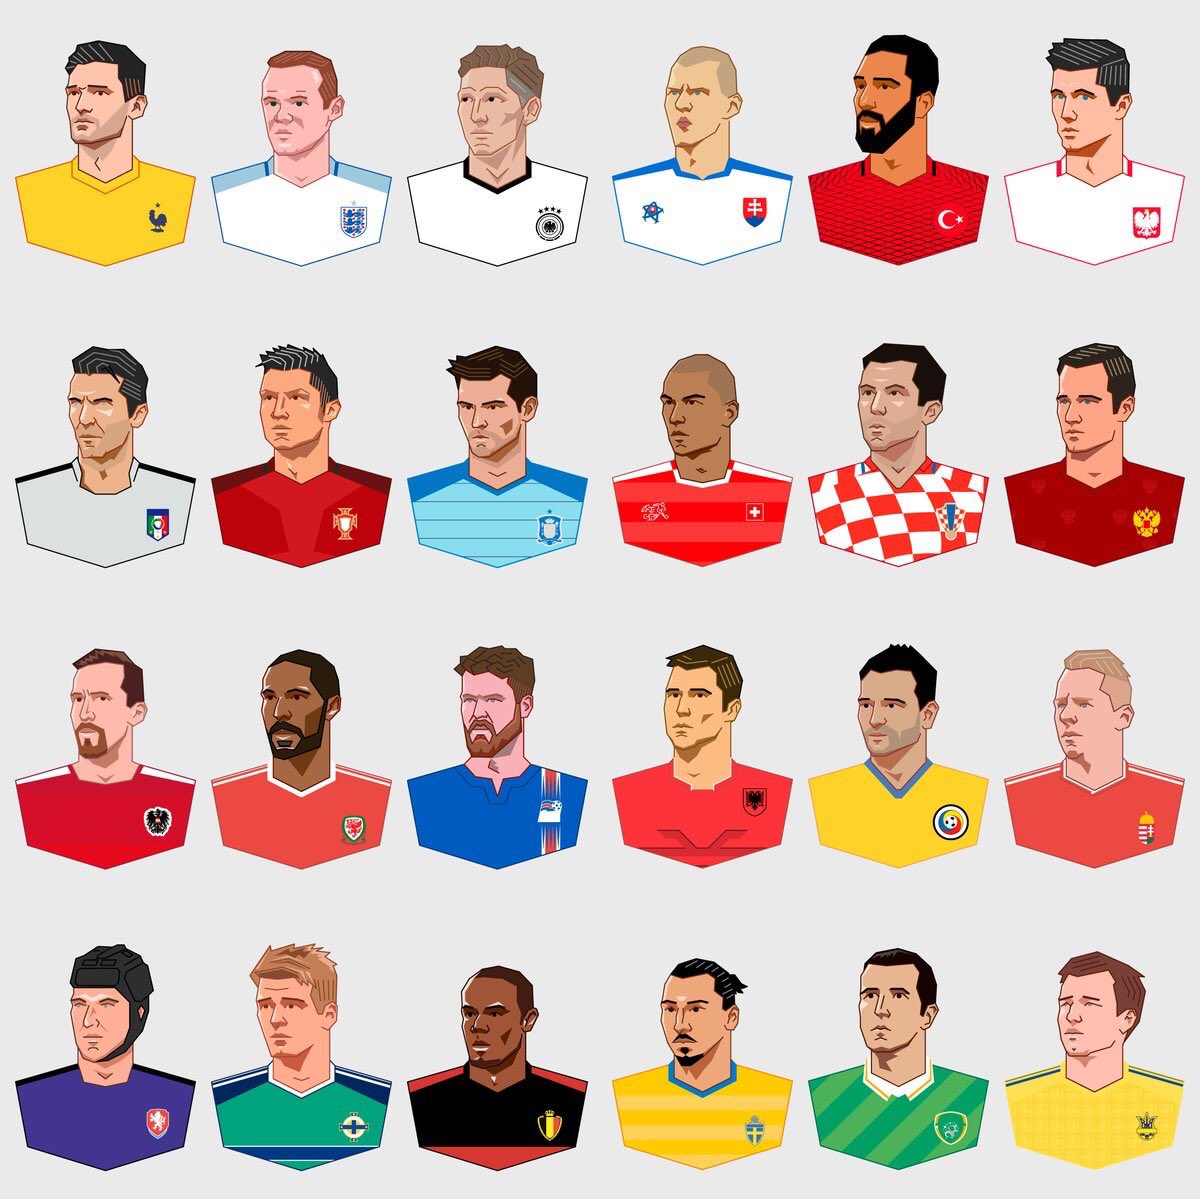 کاپیتان های 24 تیم حاضر در یورو 2016 در یک قاب (عکس)